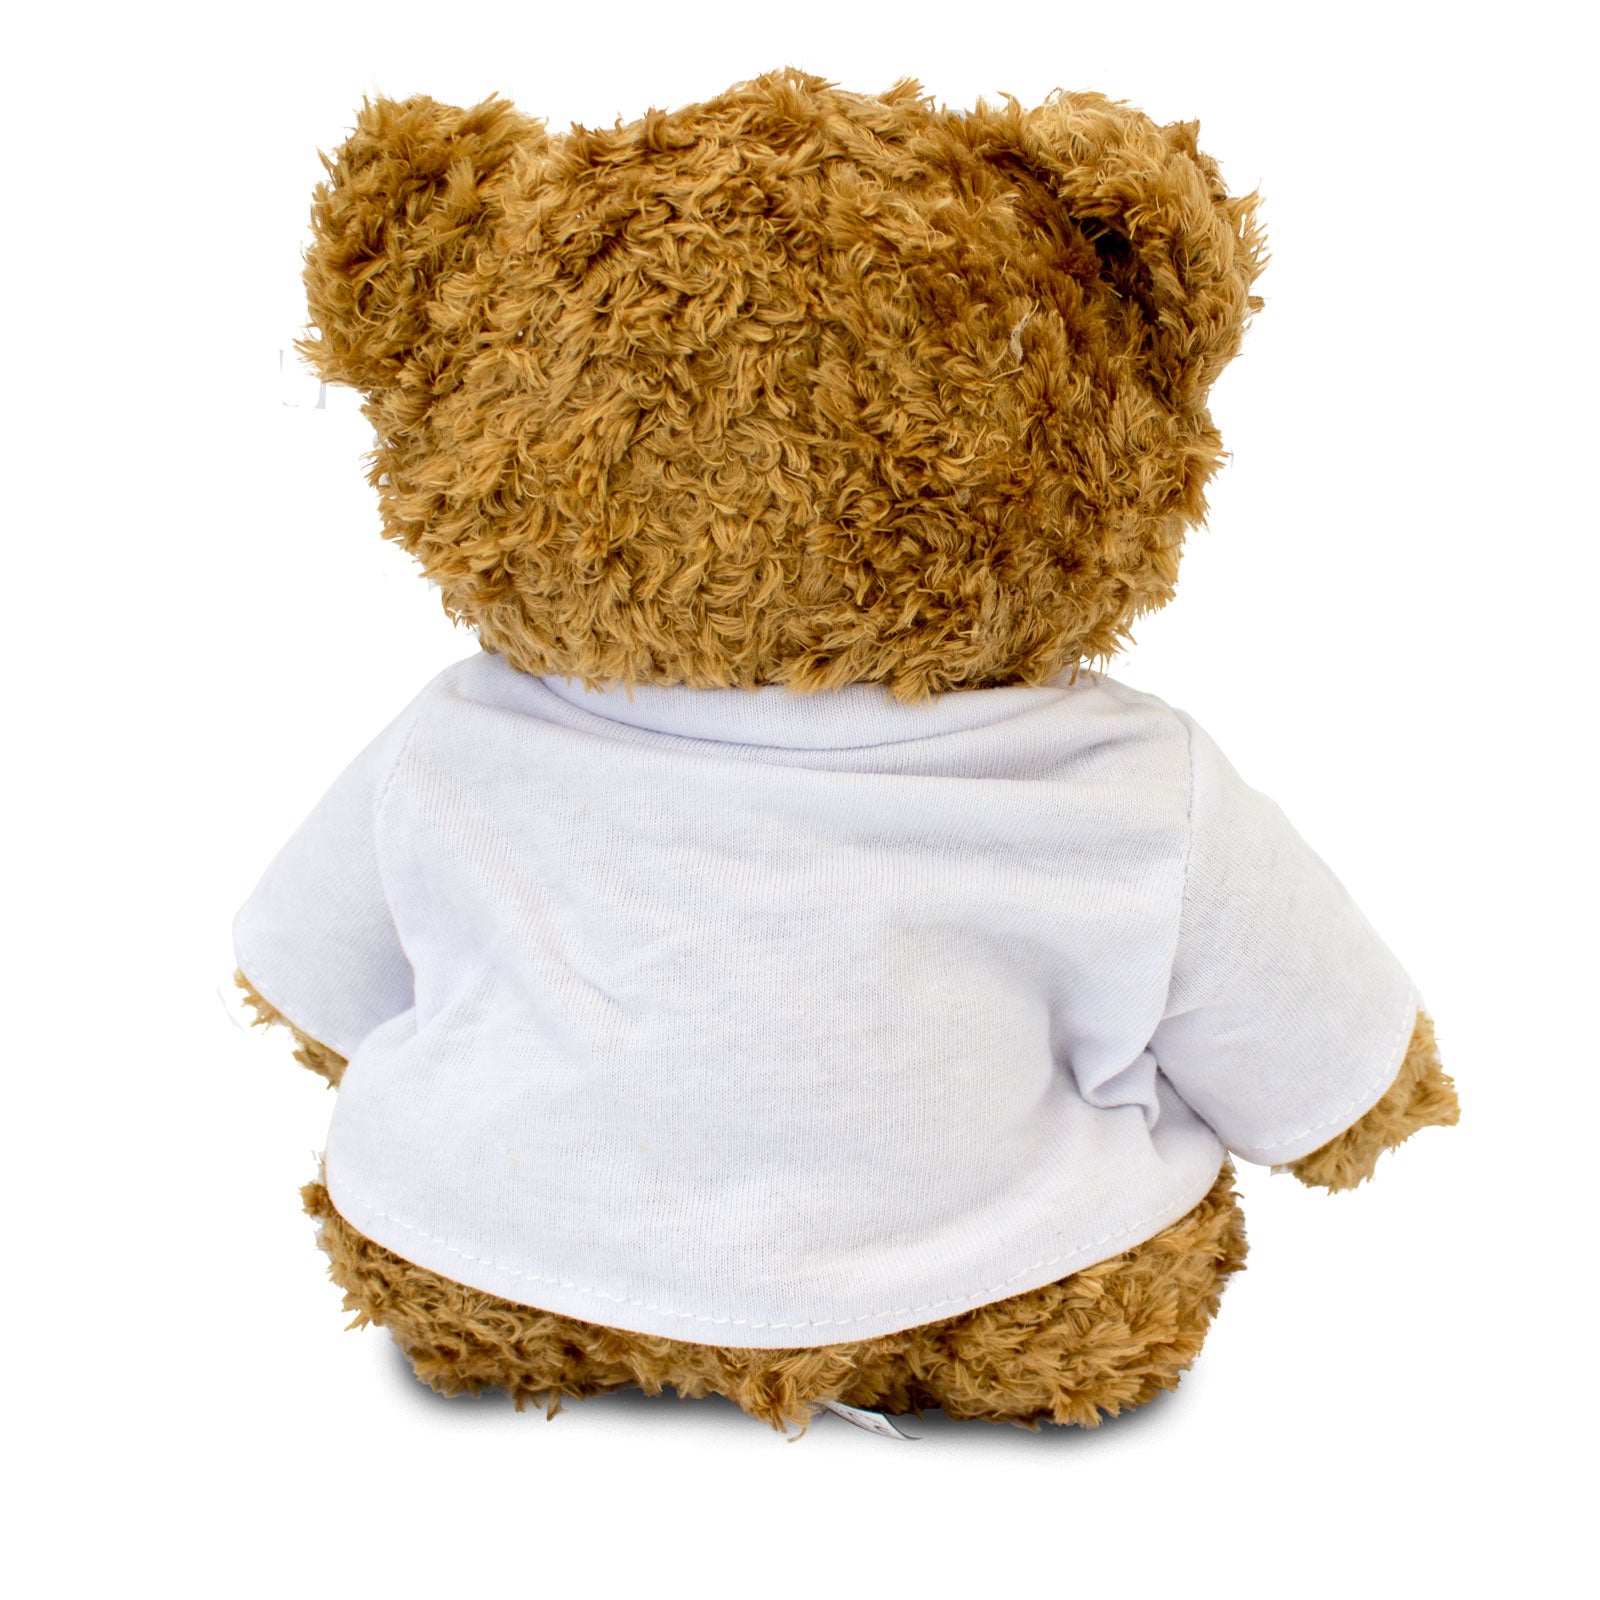 Get Well Soon Catherine - Teddy Bear